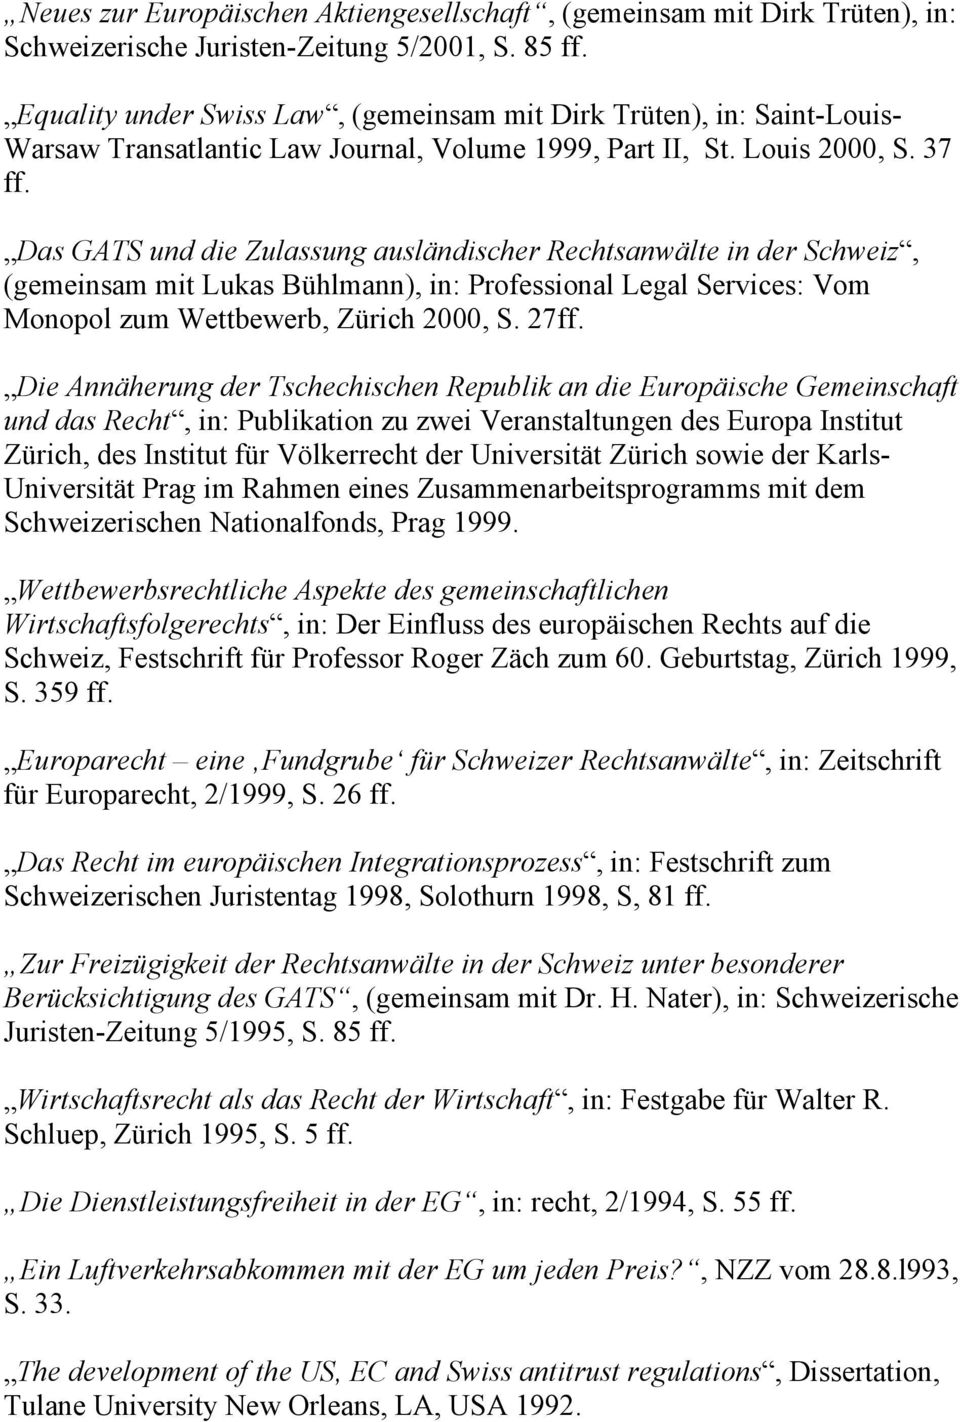 Das GATS und die Zulassung ausländischer Rechtsanwälte in der Schweiz, (gemeinsam mit Lukas Bühlmann), in: Professional Legal Services: Vom Monopol zum Wettbewerb, Zürich 2000, S. 27ff.